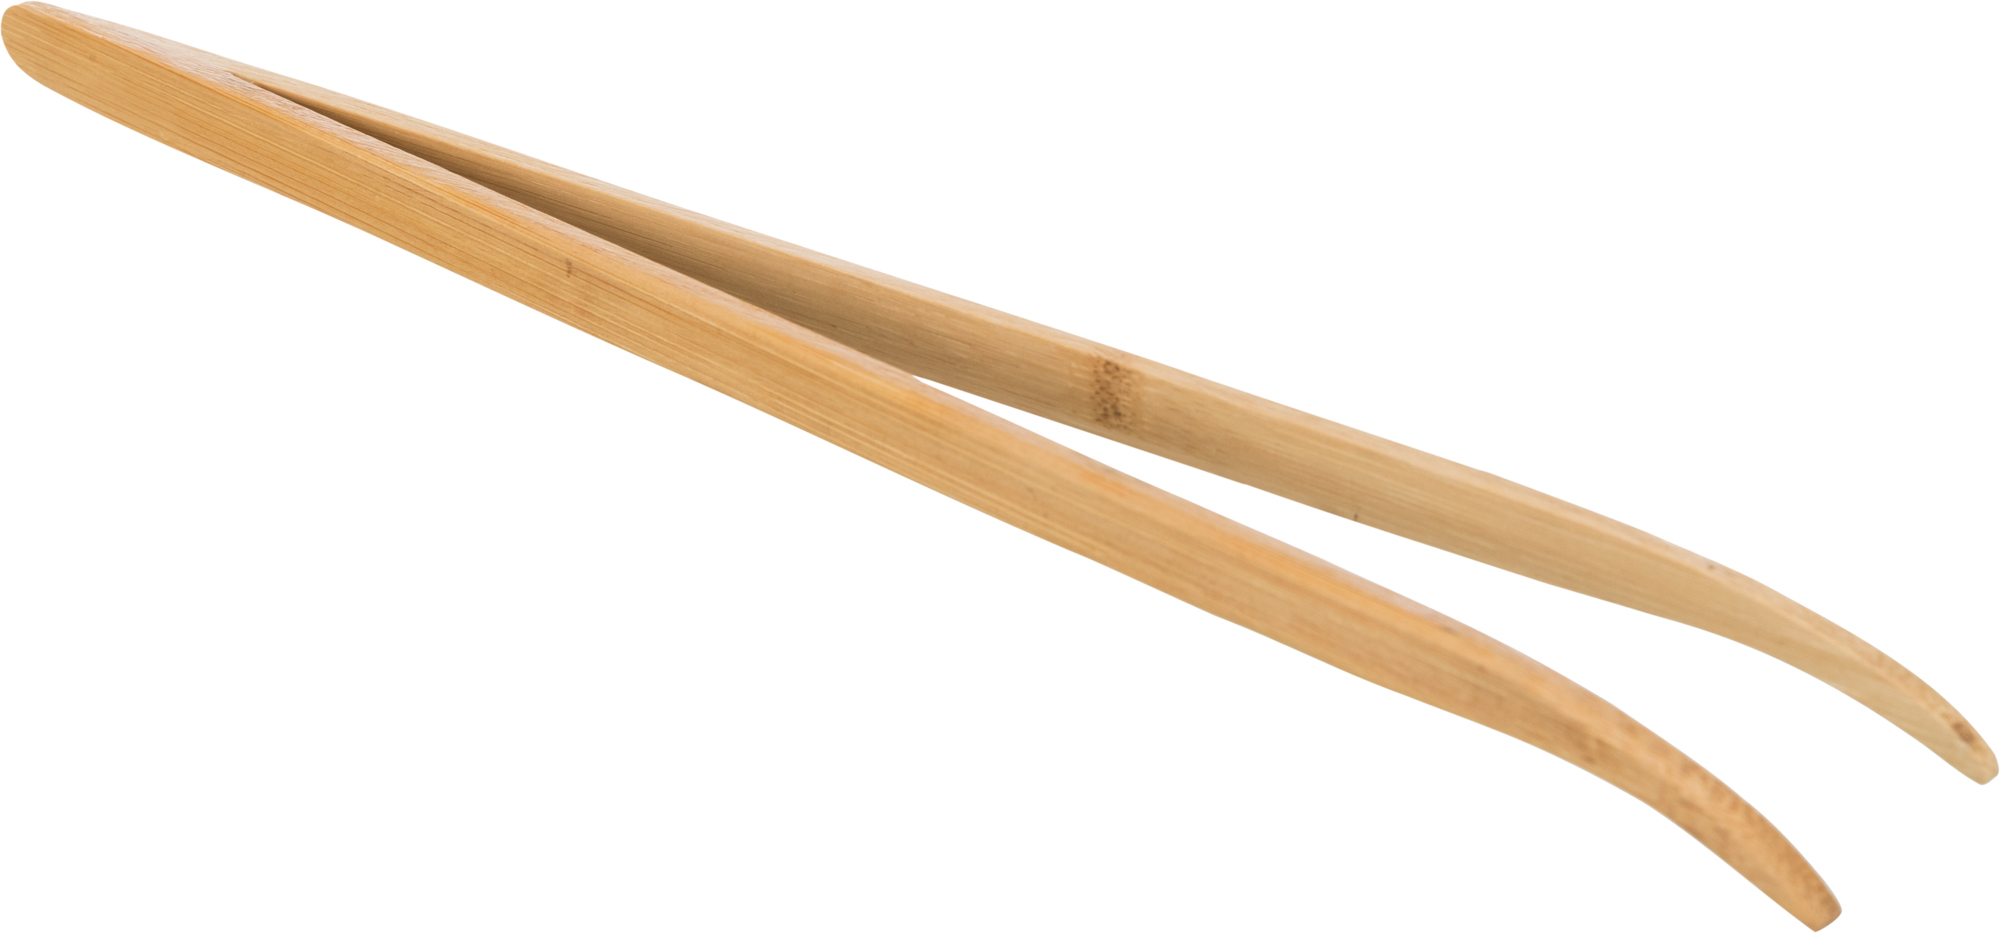 Pinça em bambu curvada para alimentos Reptiland